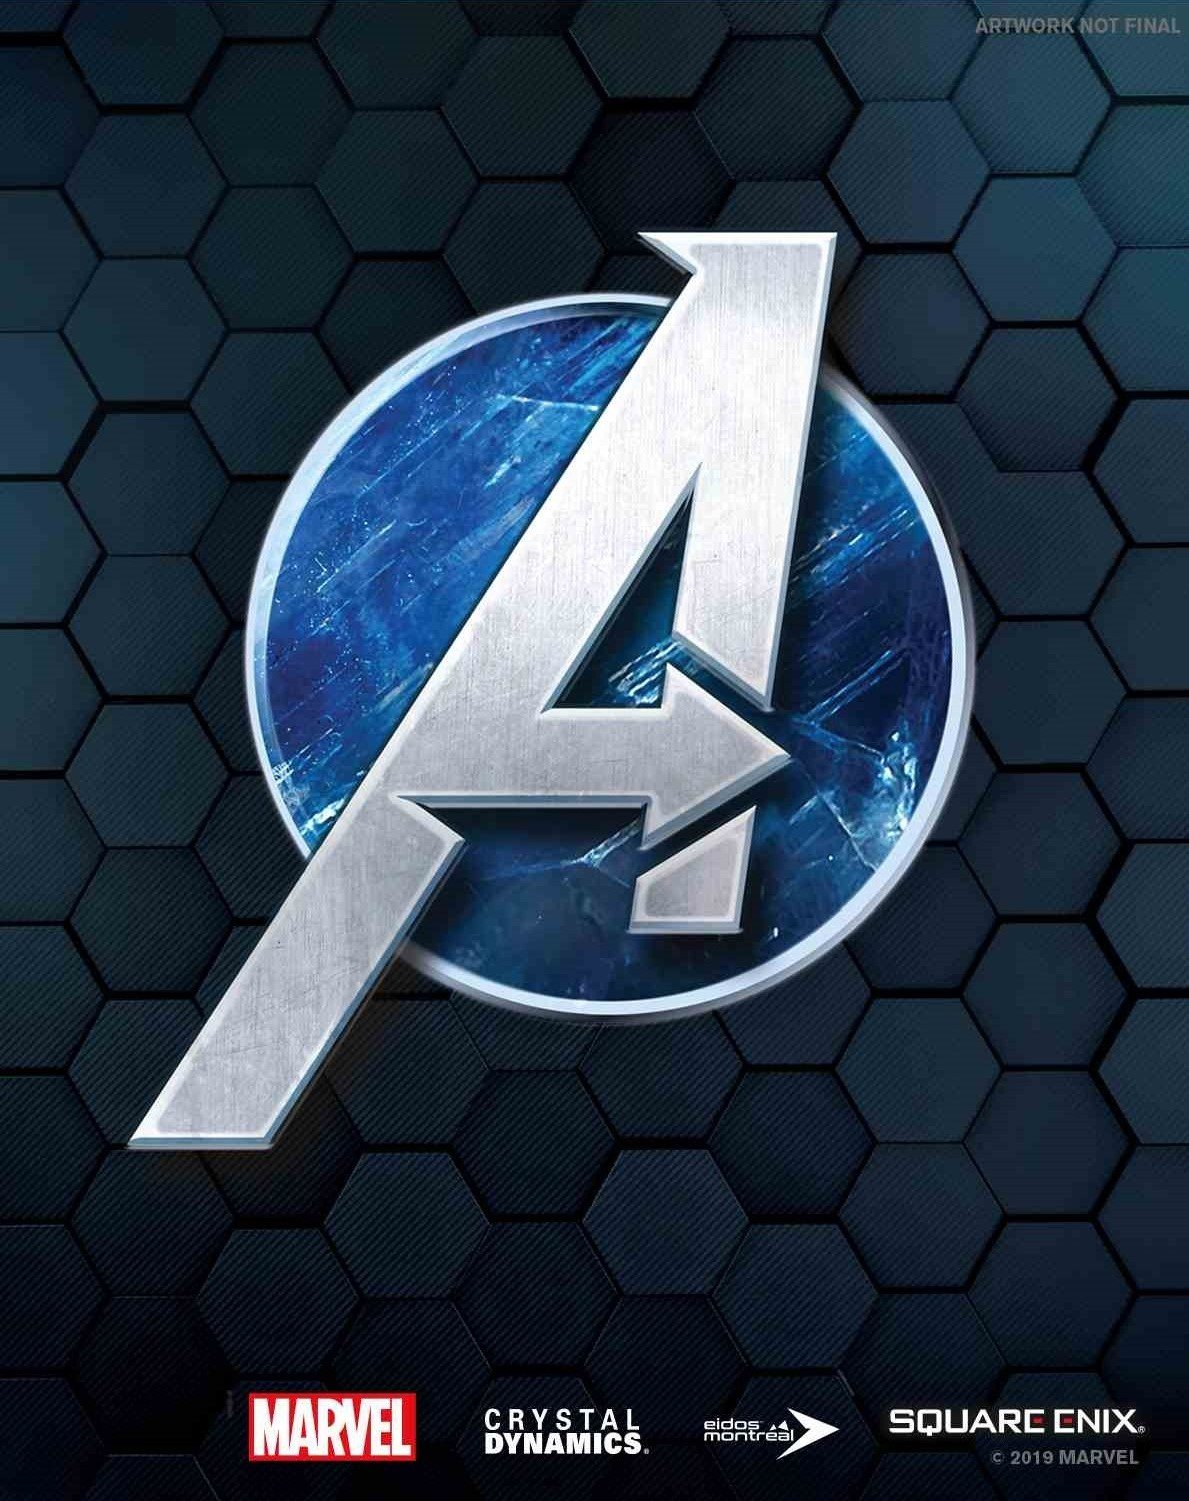 Image of Marvel's Avengers